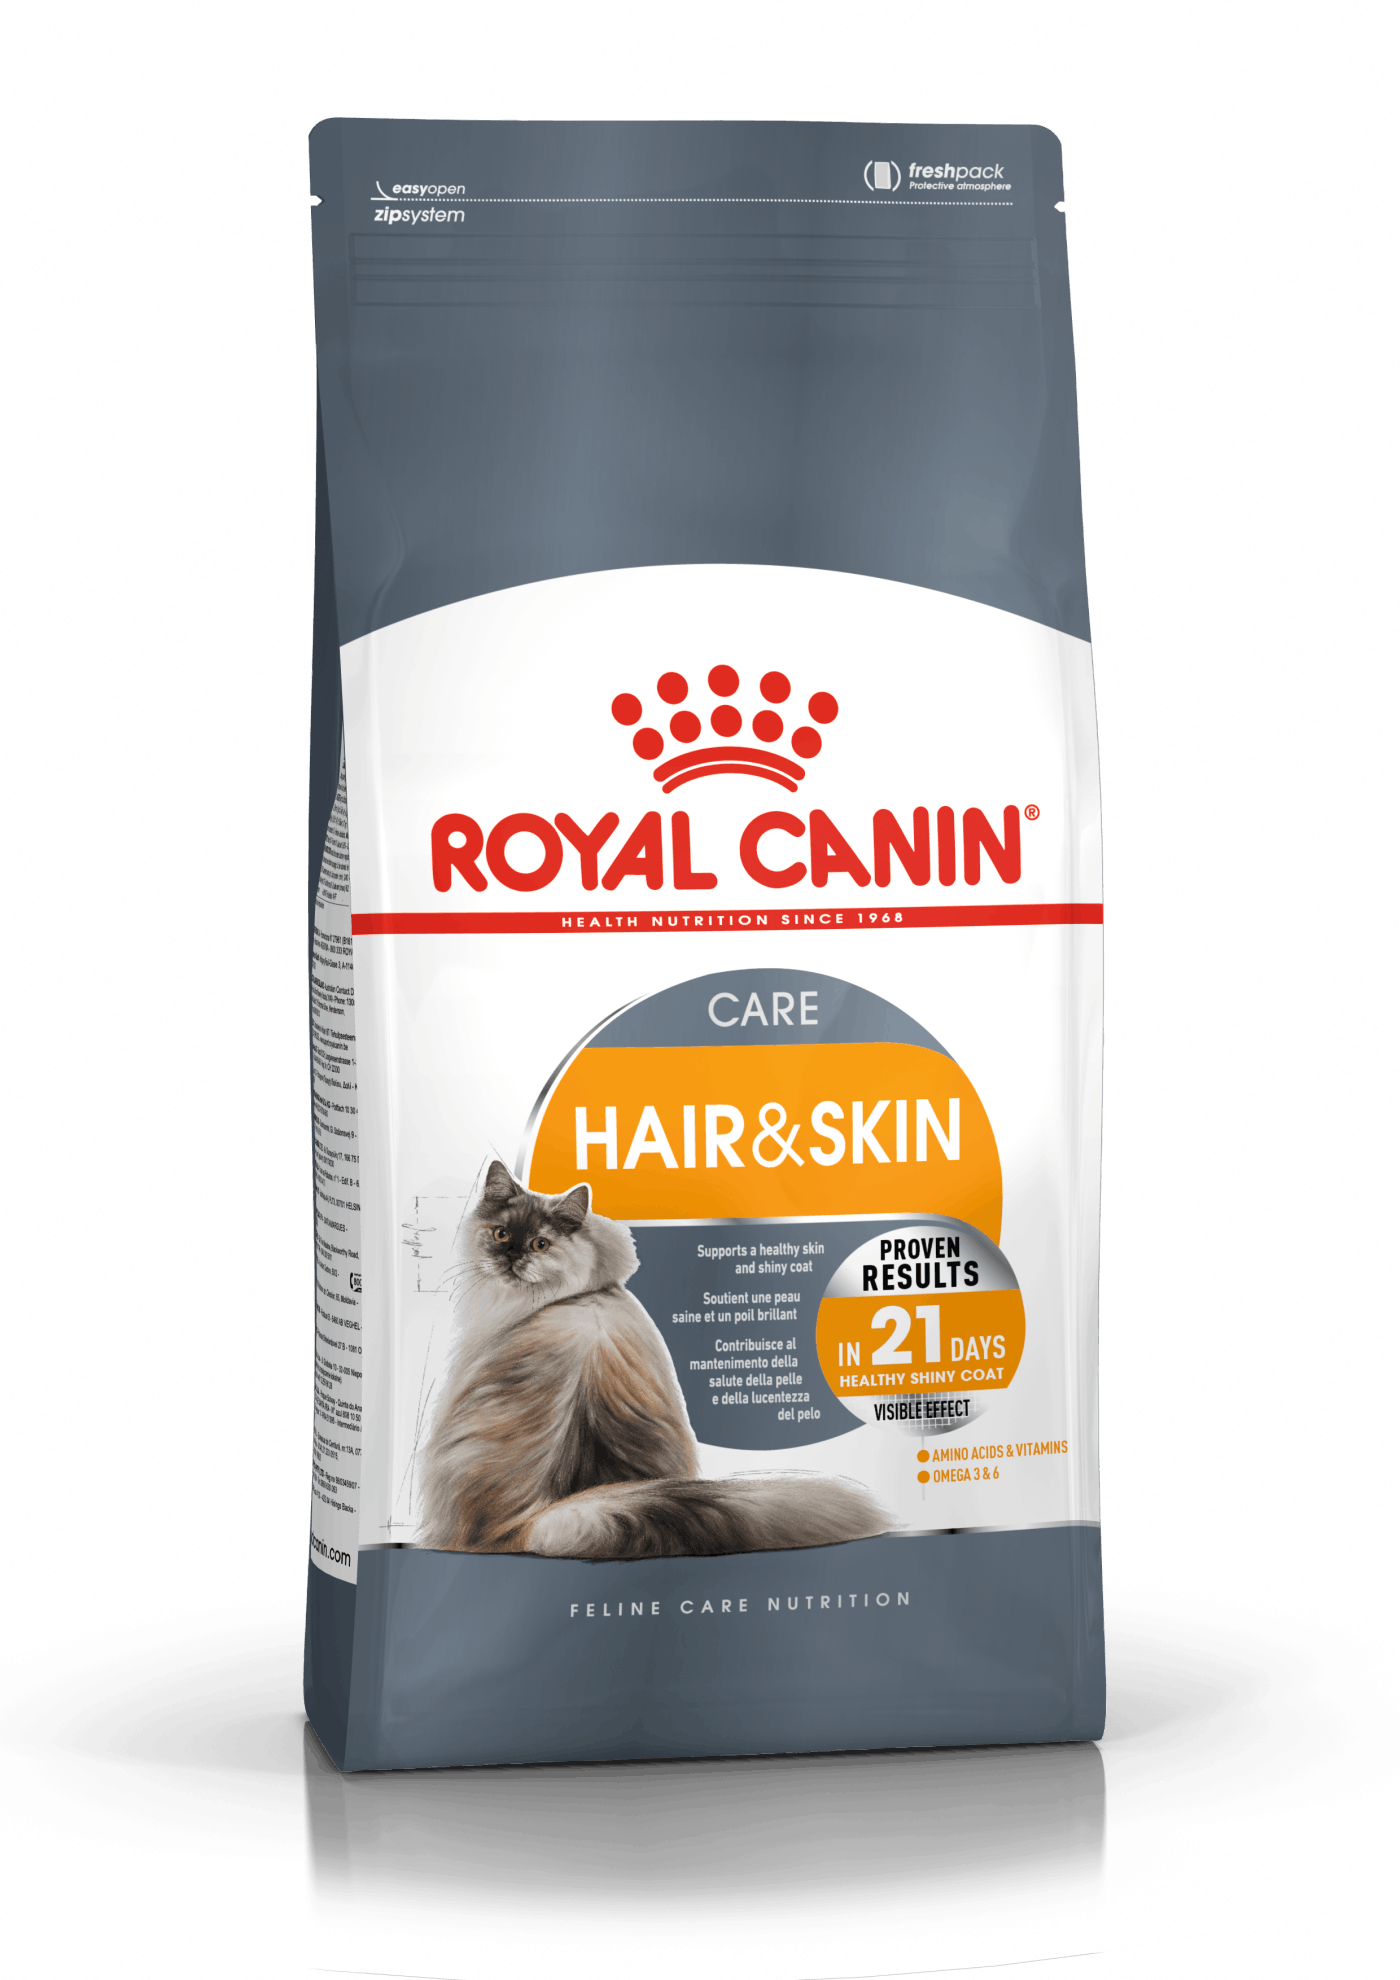 8: Royal Canin Hair & Skin Care. Pleje af kattens pels og hud